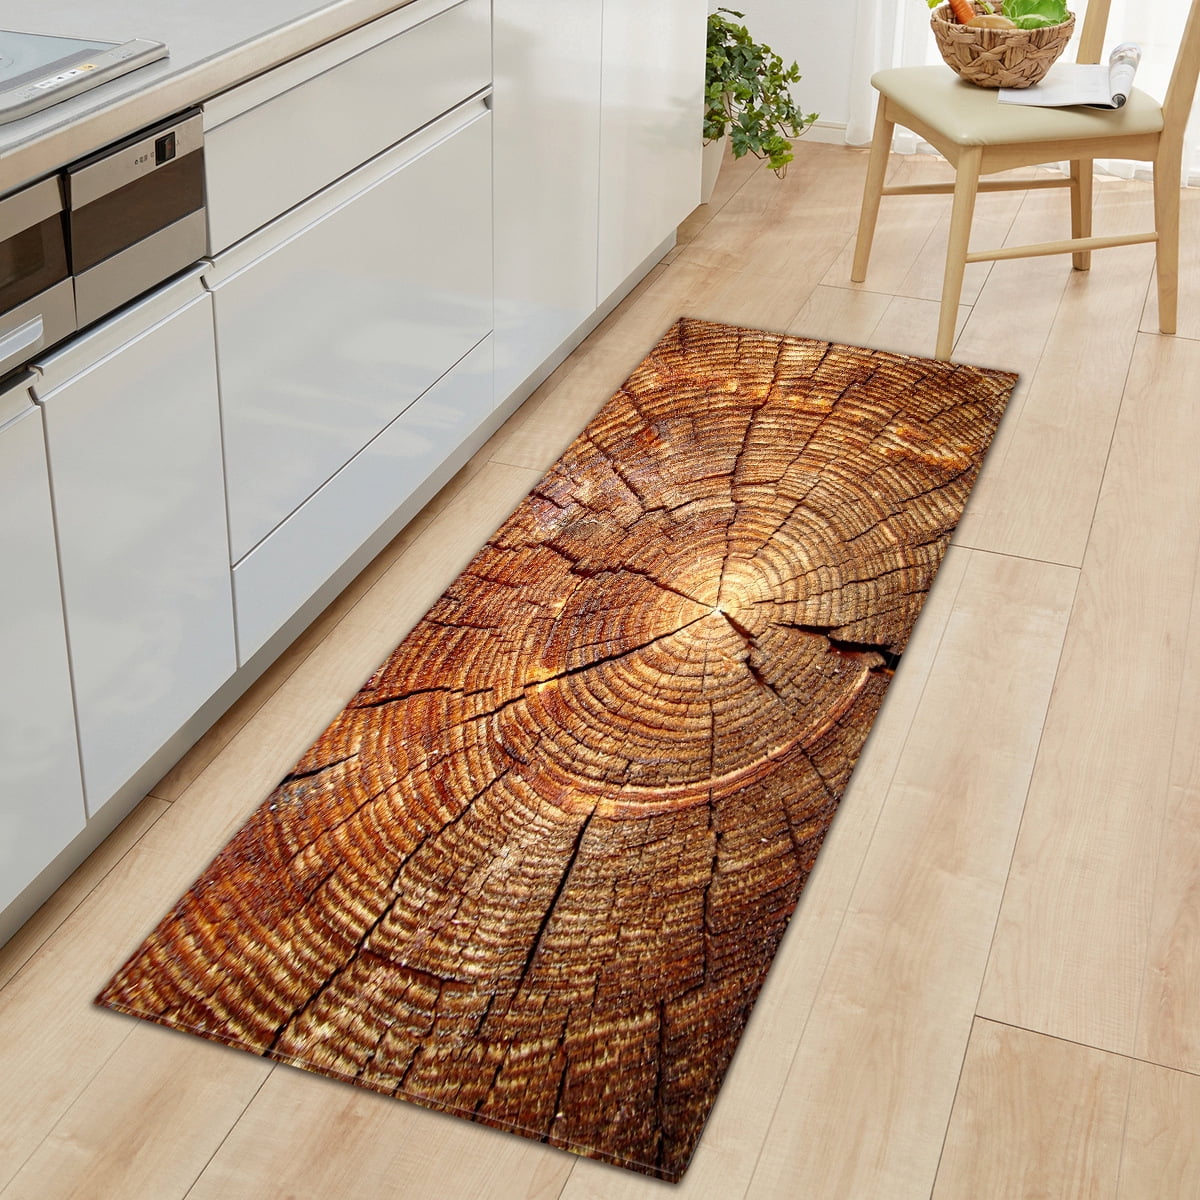 Wood Grain Rectangle Area Rug Kitchen Floor Mat Living Room Door Rugs Non-slip 